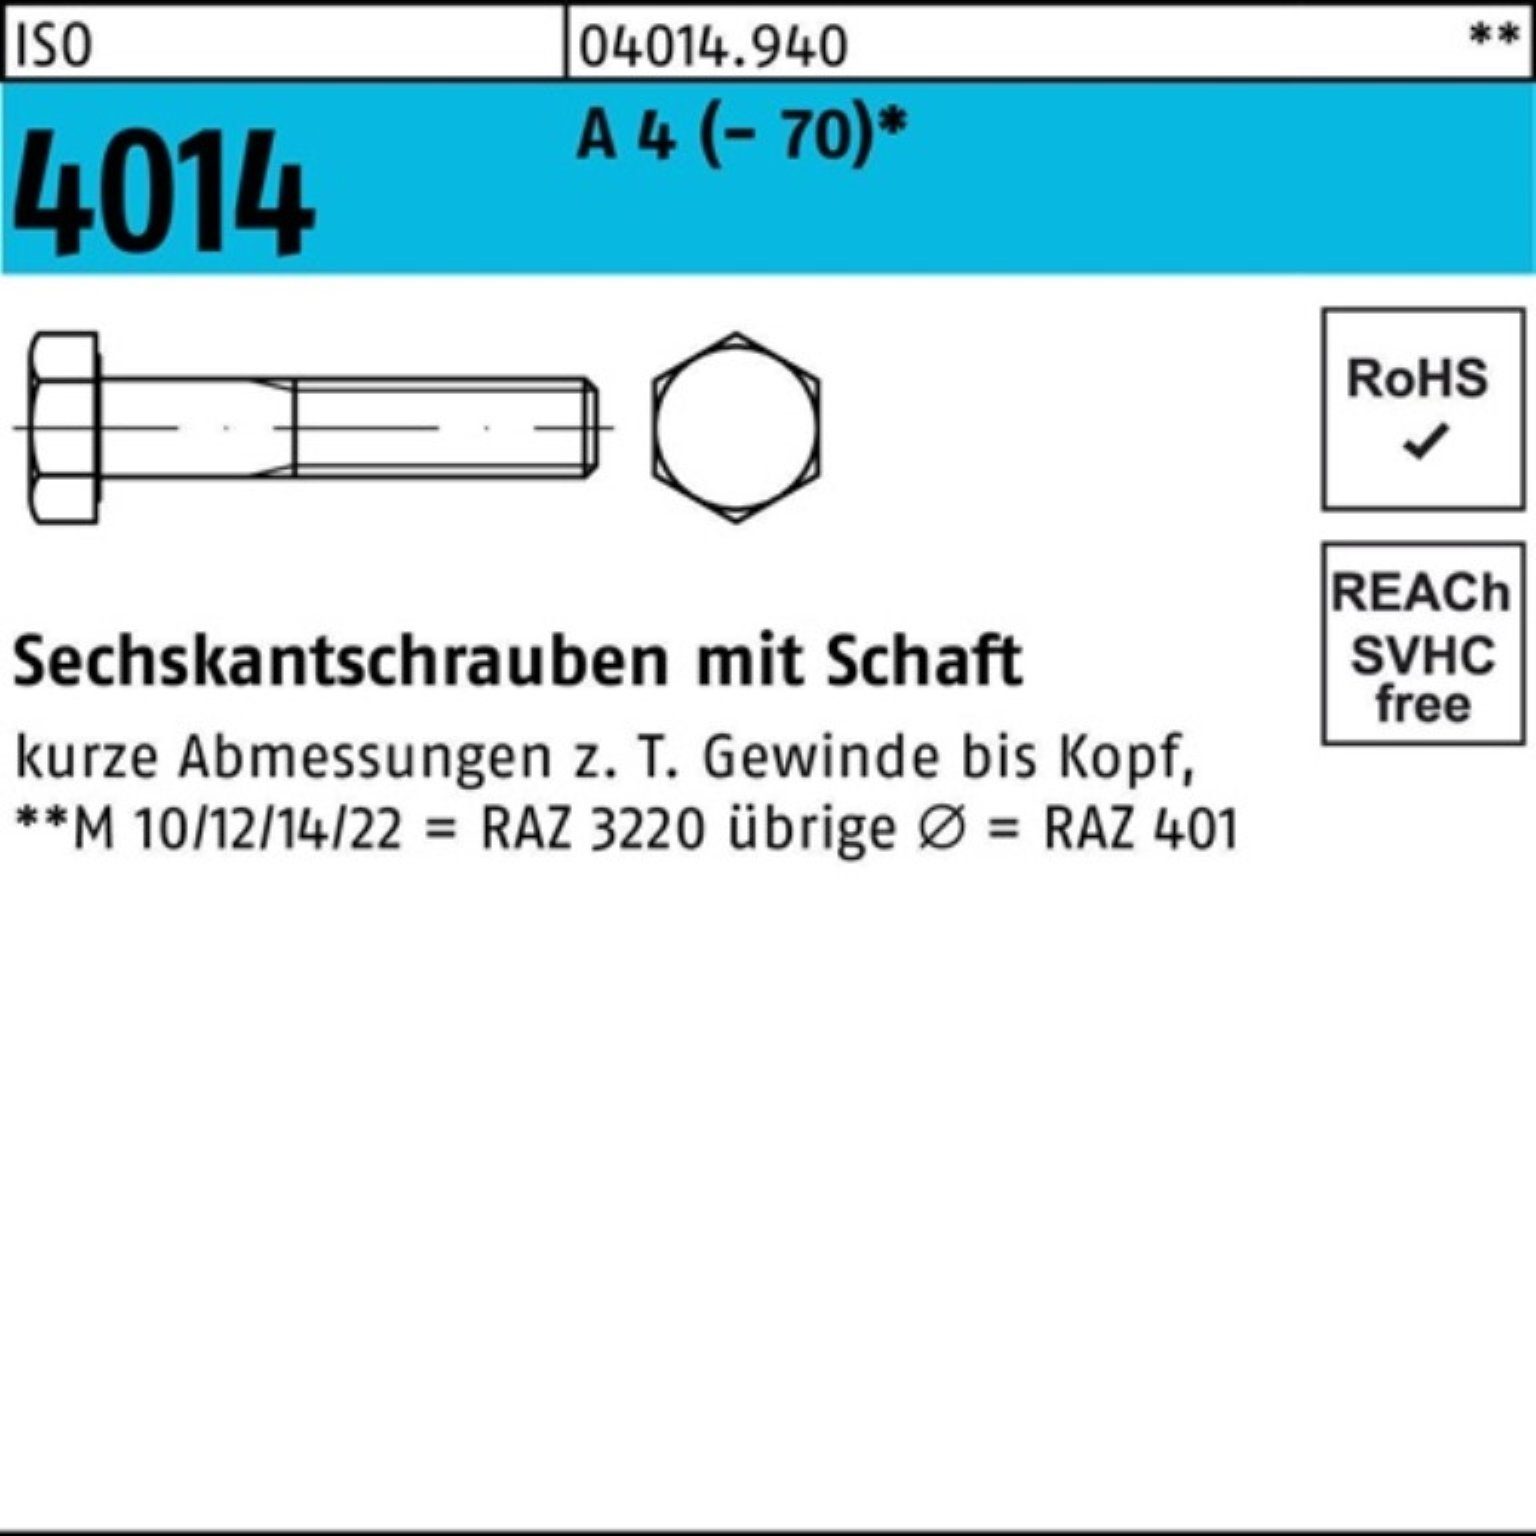 Pack Sechskantschraube 4014 ISO M20x A Sechskantschraube 90 Bufab (70) 4 1 Schaft 100er Stü